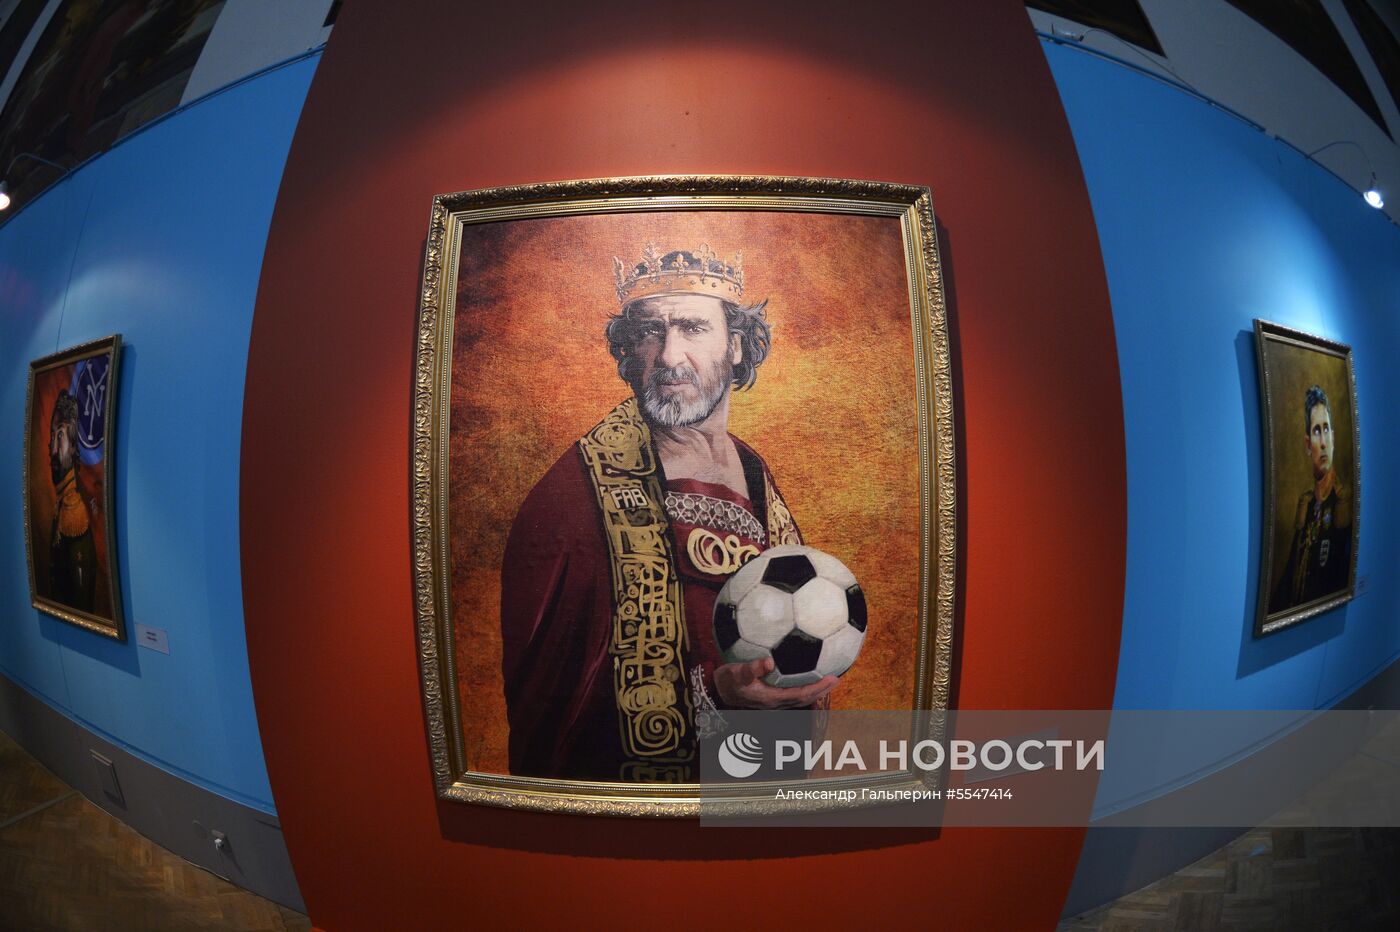 В музее Академии художеств открылась выставка "Подобно богам", приуроченная к ЧМ-2018 по футболу